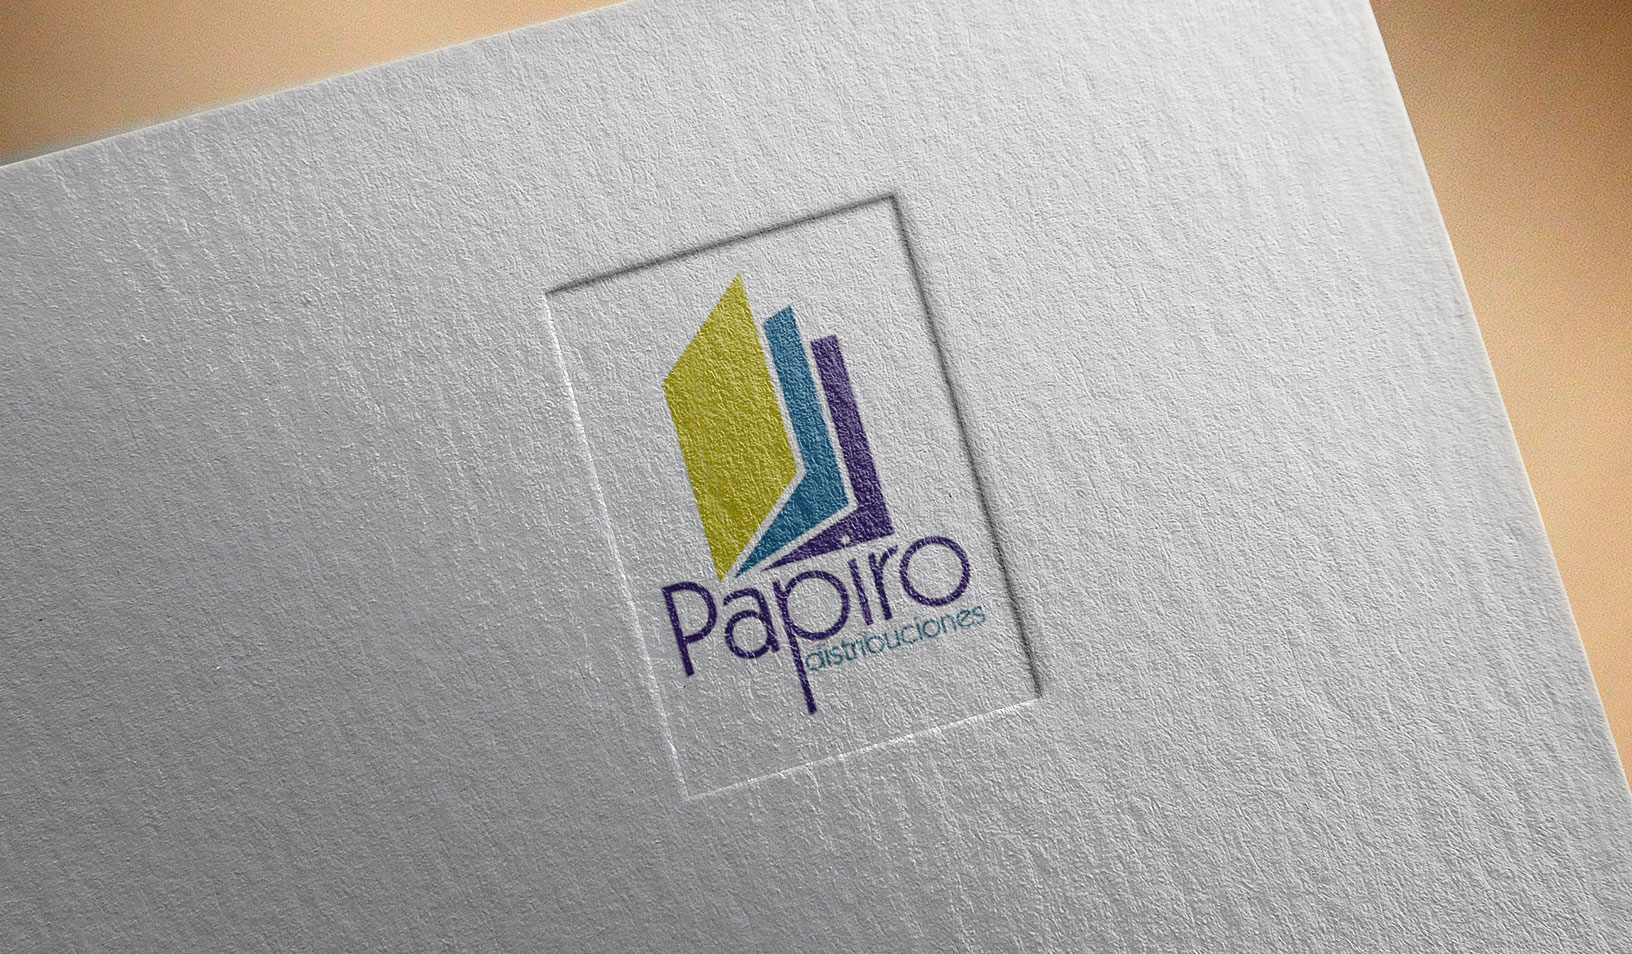 Distribuciones Papiro también apuesta por el correo en 'La Nube'